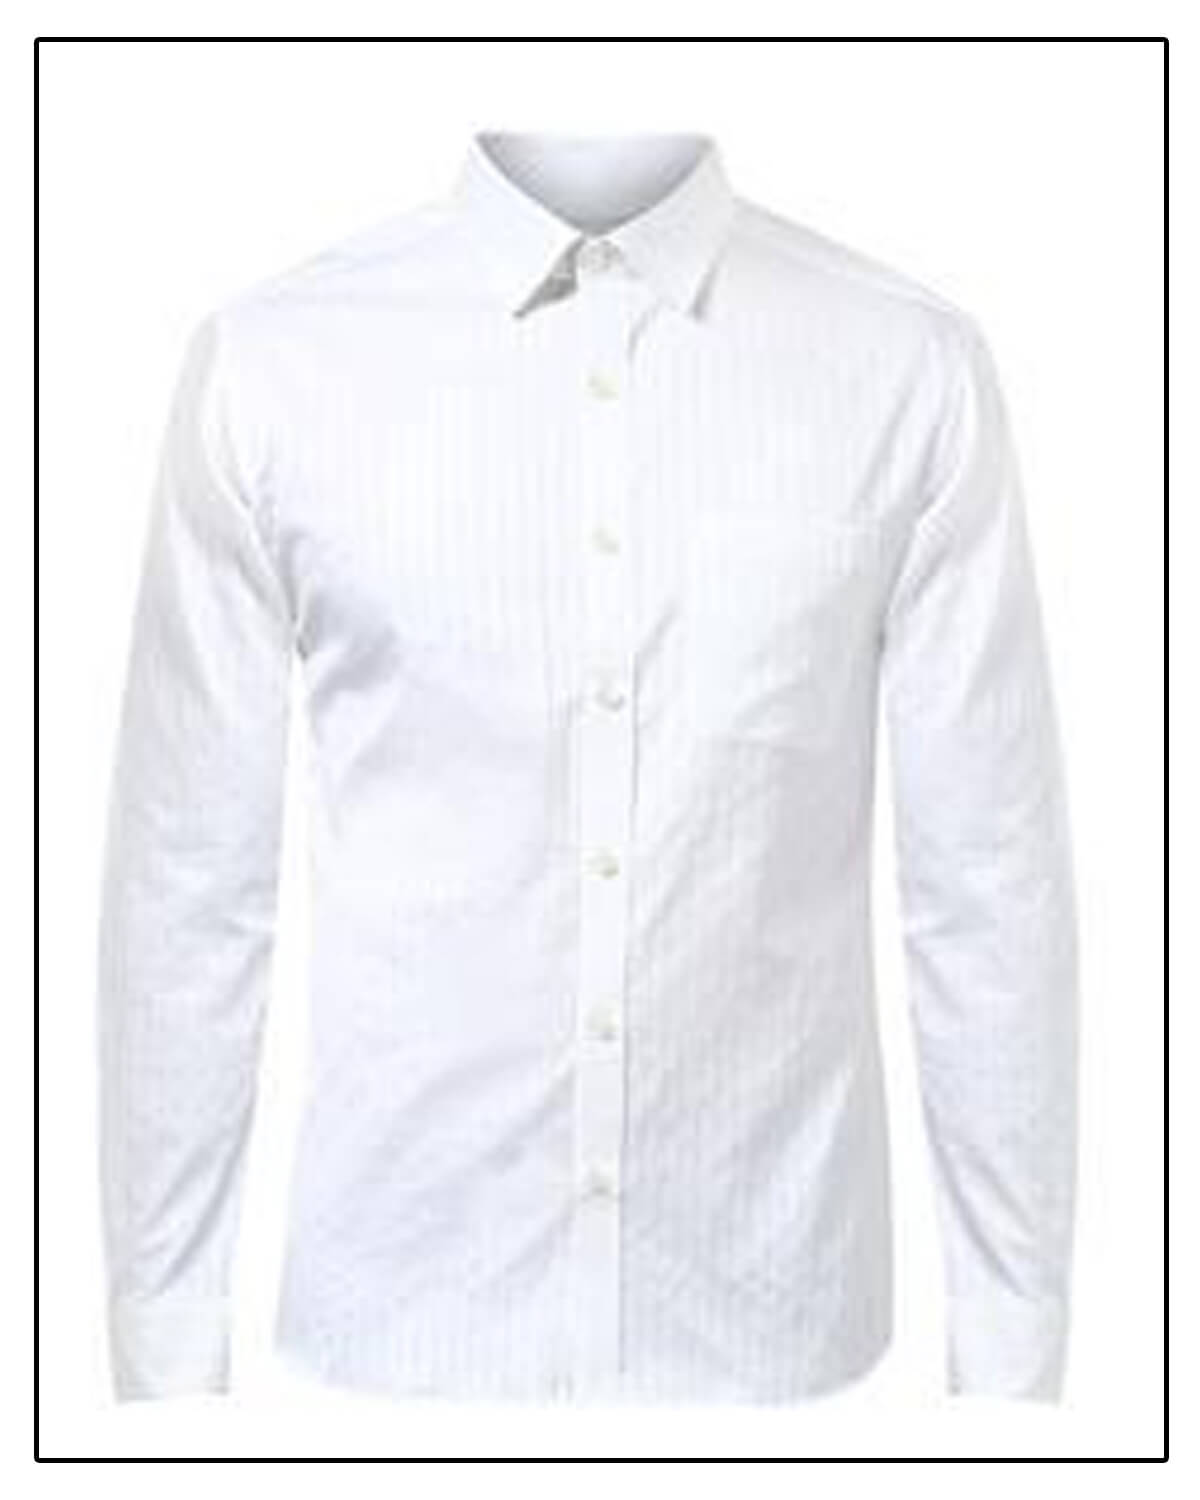 royal white shirt